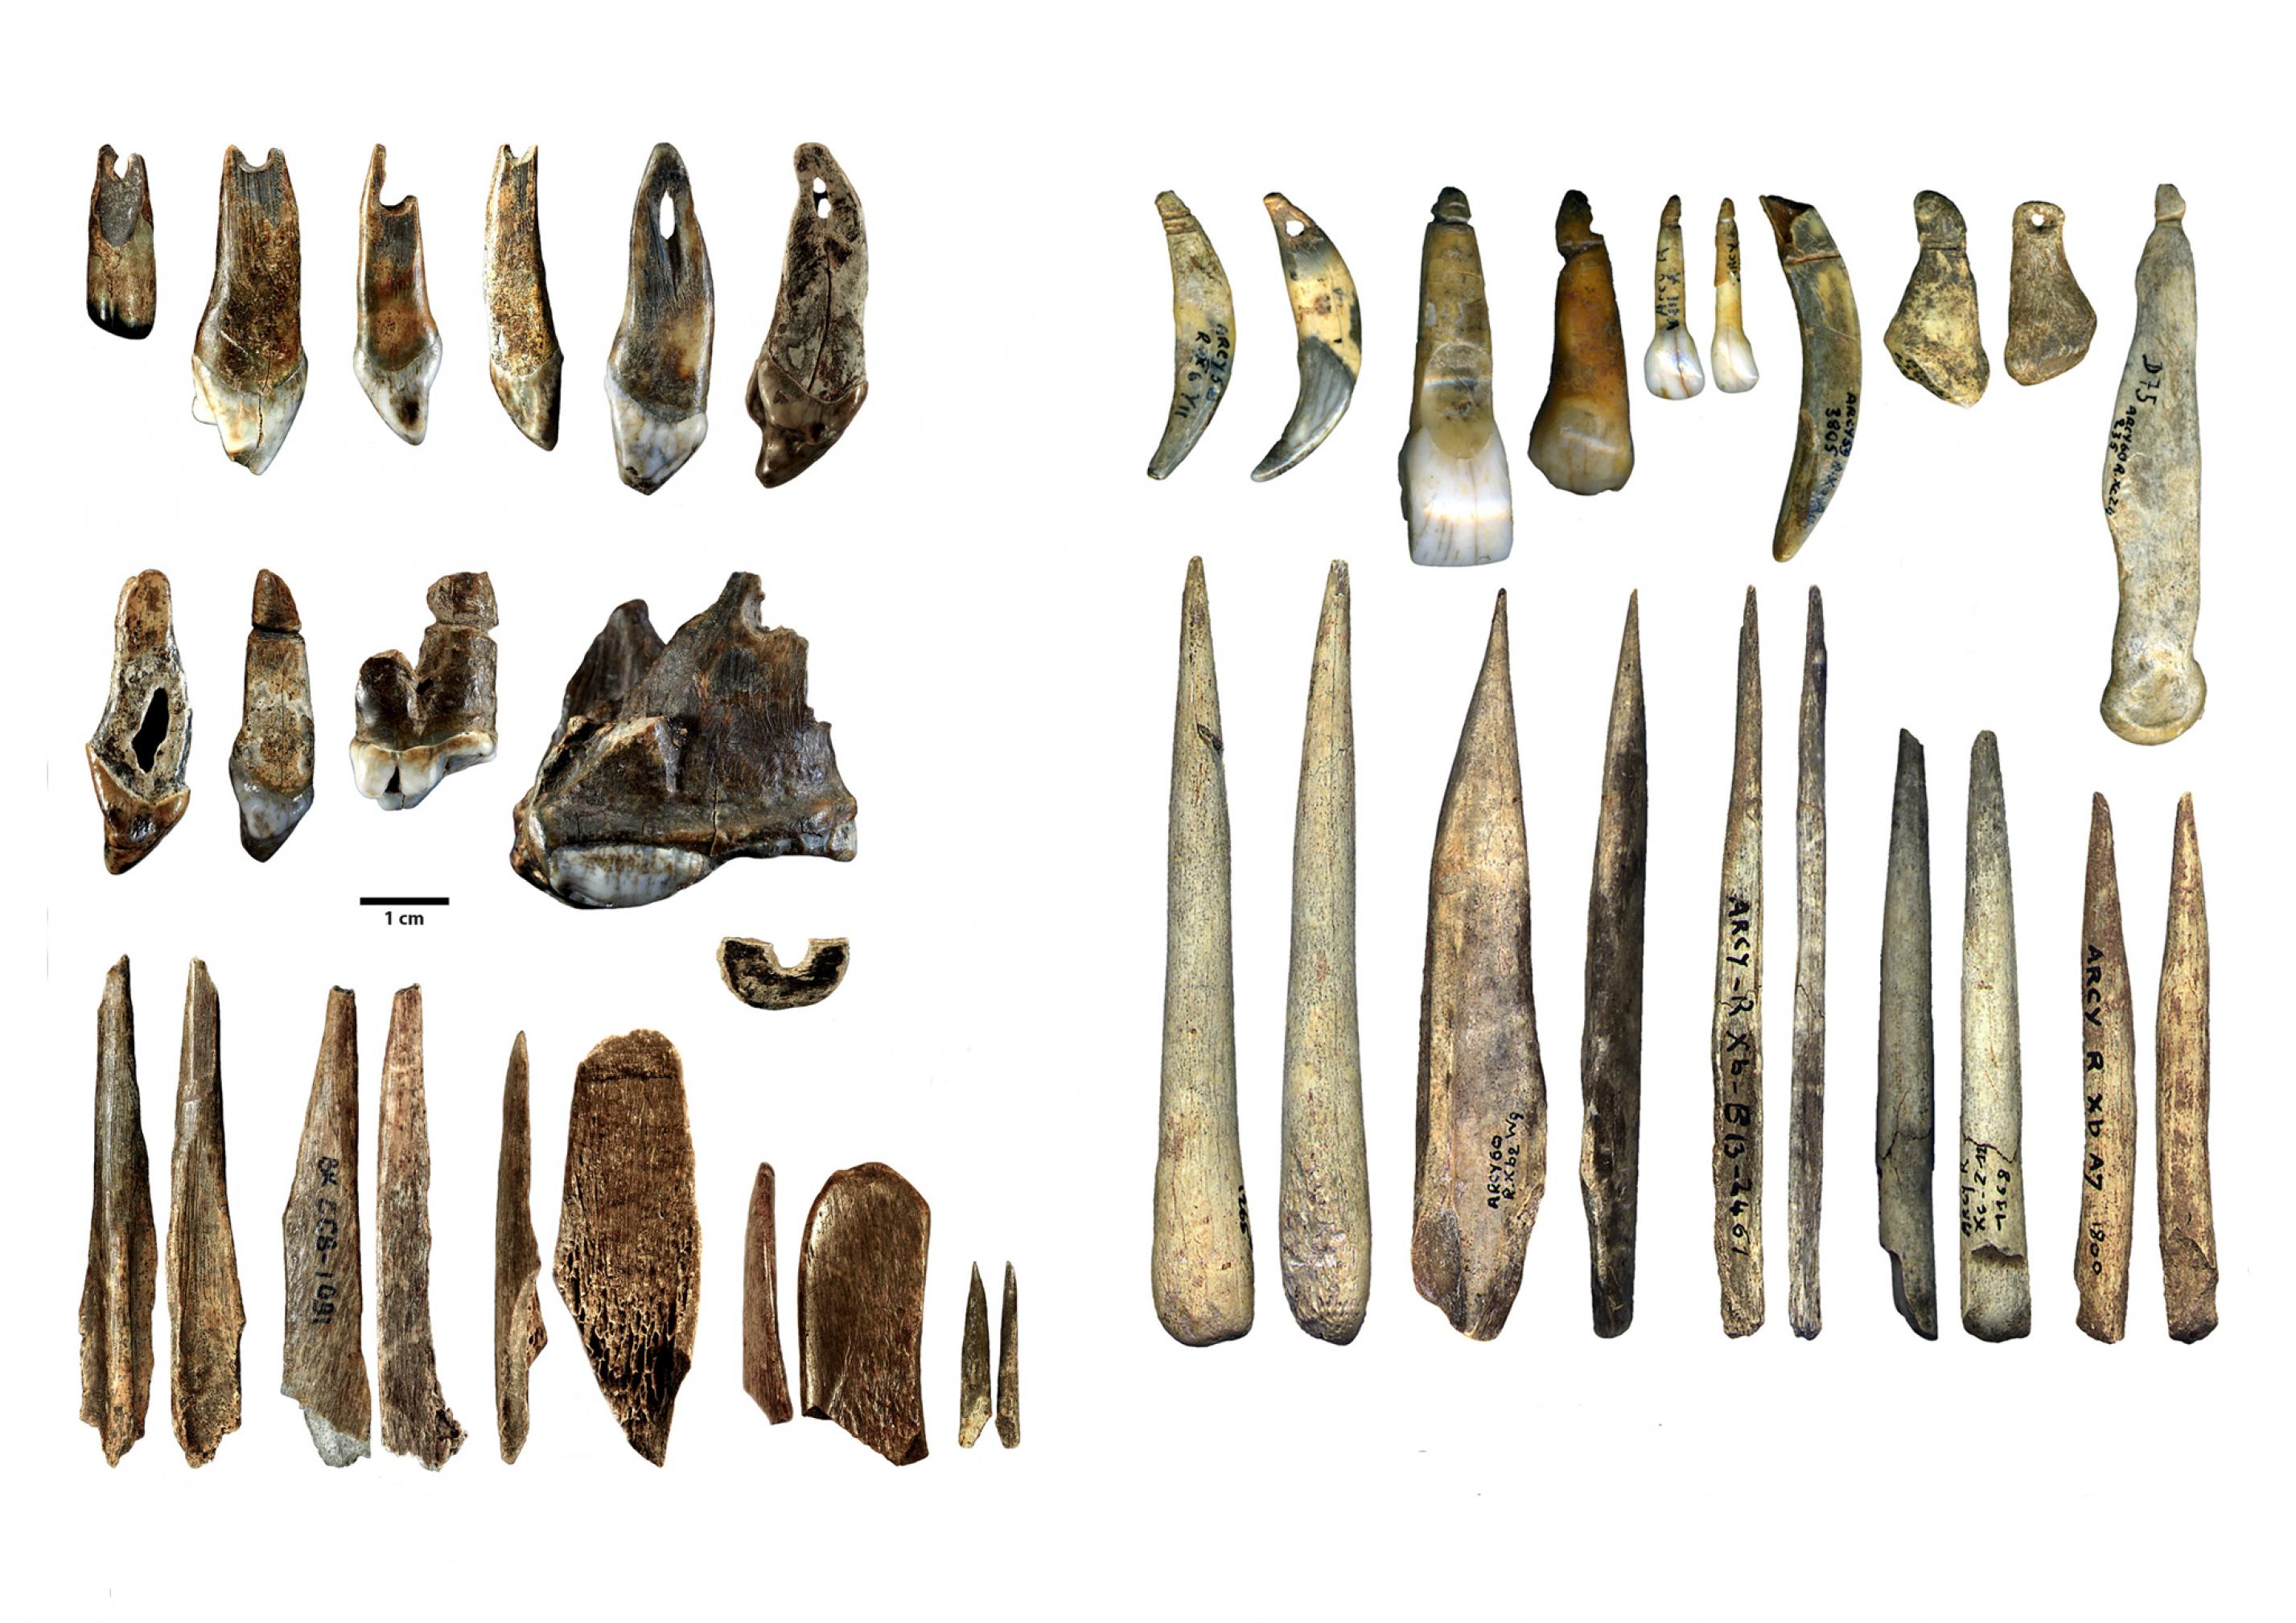 In der linken Bildhälfte sind in drei Reihen übereinander längliche Knochenwerkzeuge sowie kleine Schmuckgegenstände, etwa durchlochte Tierzähne, zu sehen. Sie stammen aus der Bacho-Kiro-Höhle, sind rund 45.000 Jahre alt und wurden von modernen Menschen gefertigt. In der Grotte du Renne in Frankreich fanden sich ganz ähnliche Knochengeräte und Schmuckgegenstände, die auf der rechten Seite des Bildes in zwei Reihen übereinander zu sehen sind. Sie sind einige Jahrtausende jünger und dort lebten in jener Zeit Neandertaler. Die Forscher vermuten daher, dass die Neandertaler diese Kultur vom Homo sapiens übernommen haben.